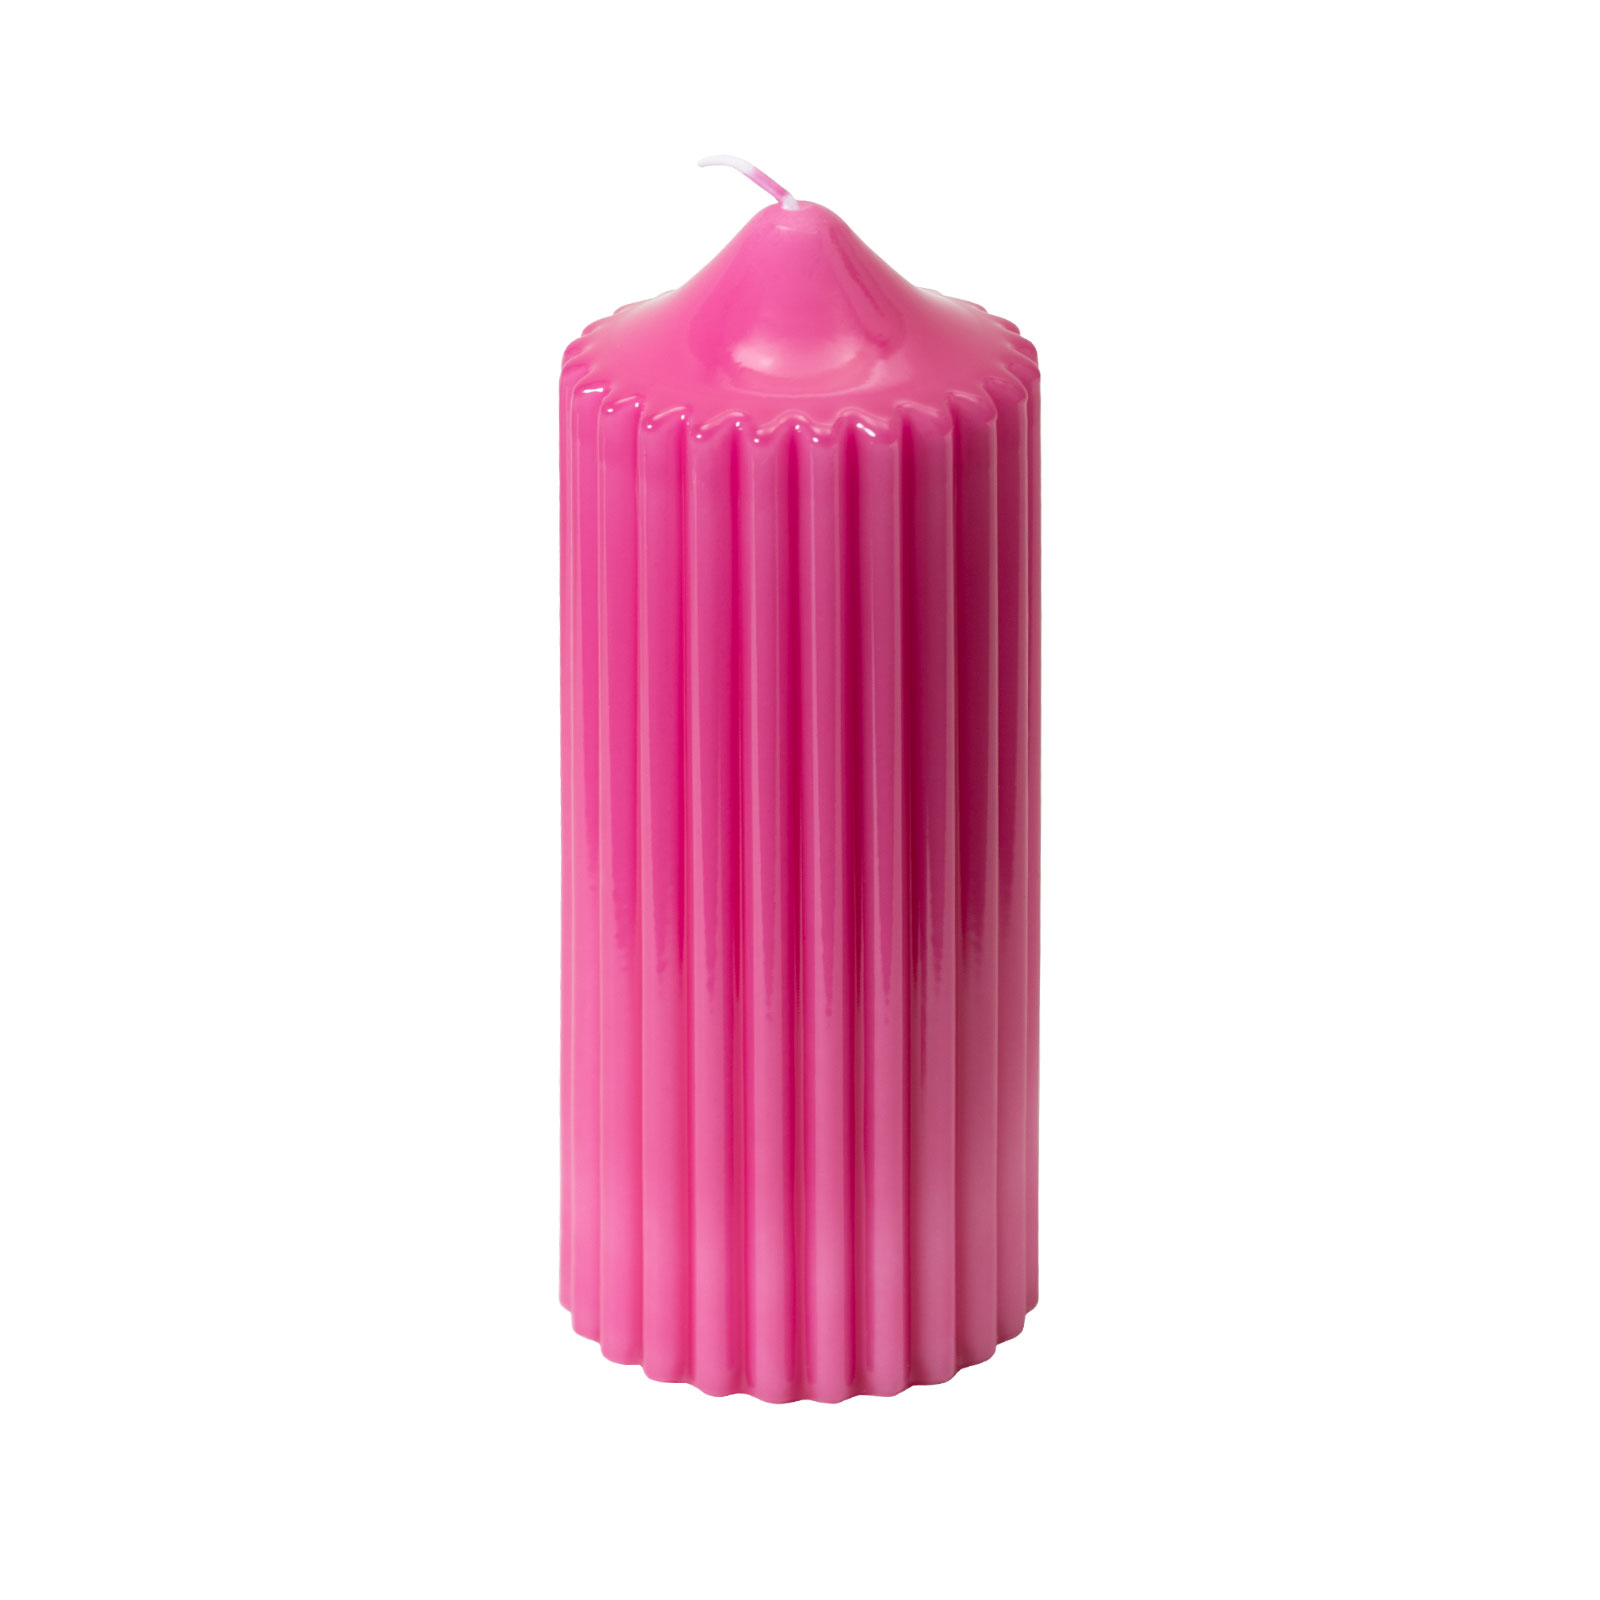 Engels Kerzen Gelackte Rillenkerze 8x20cm pink